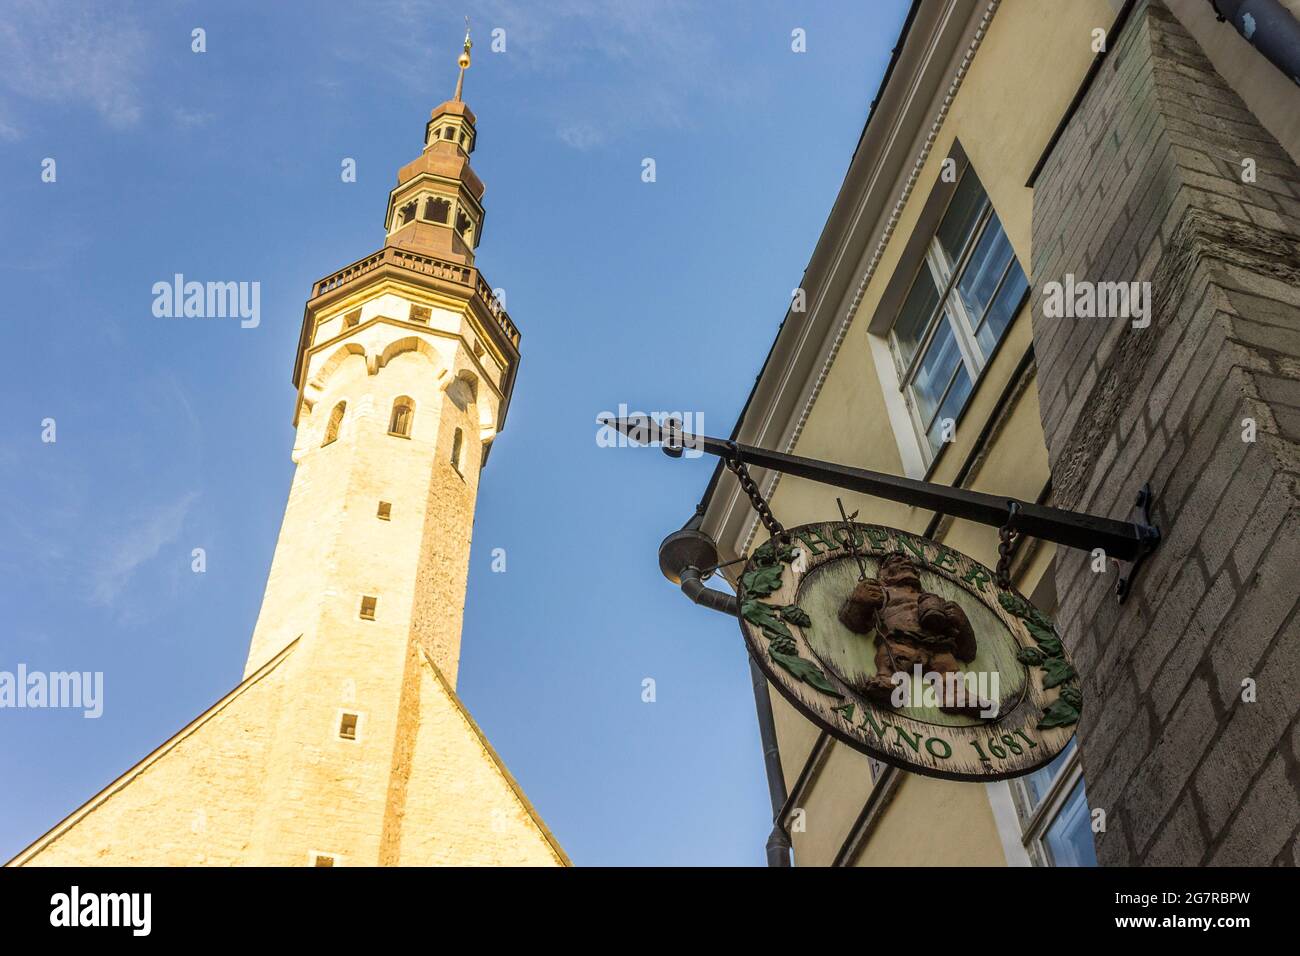 Tallinn, Estonia. The tower of Tallinn Town Hall (Tallinna raekoda) Stock Photo